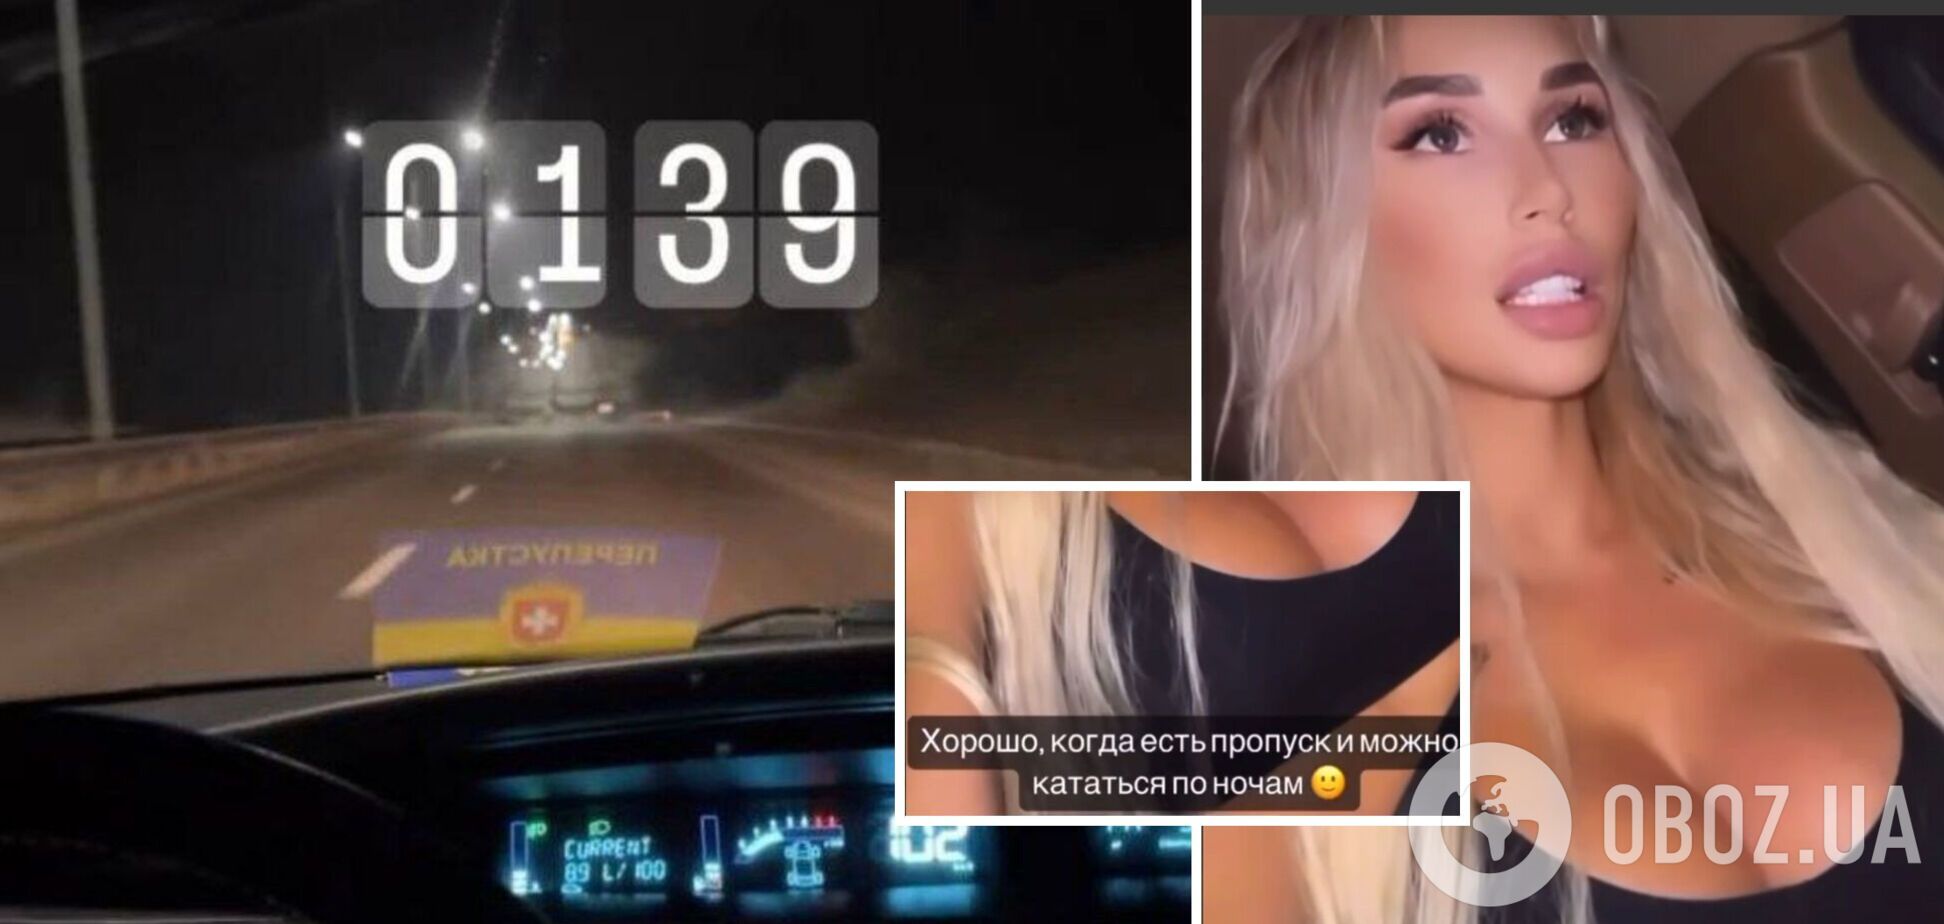 Девушка опубликовала видео где якобы ездит ночью по улице со спецпропуском